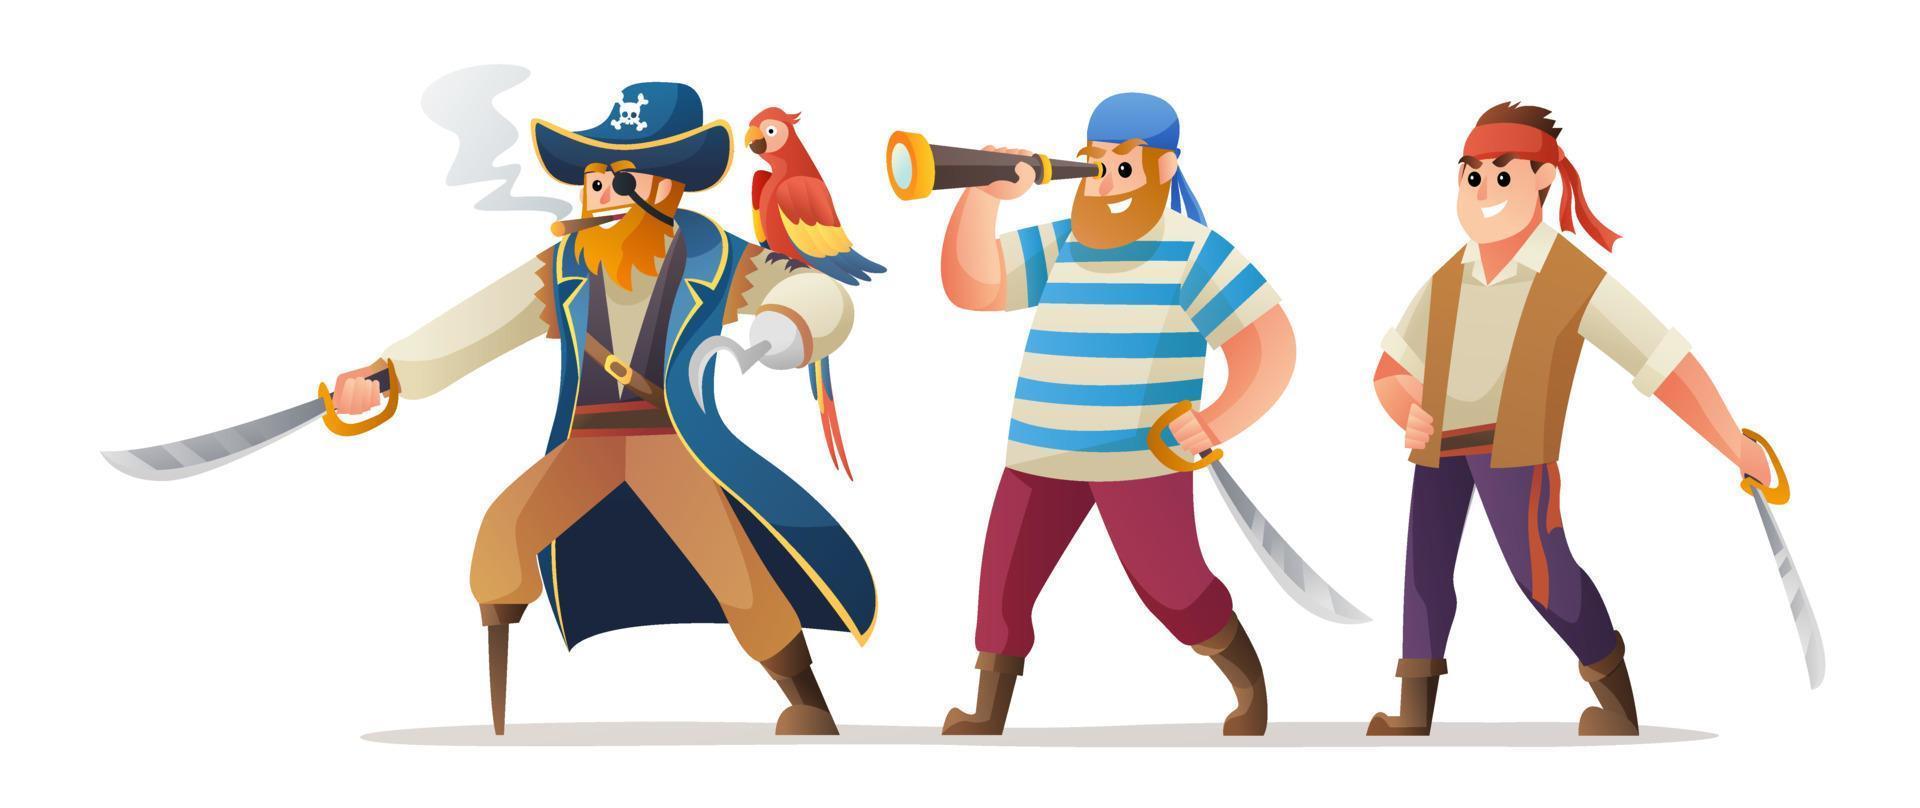 tekenset van piratenkapitein en soldaten met zwaard vector